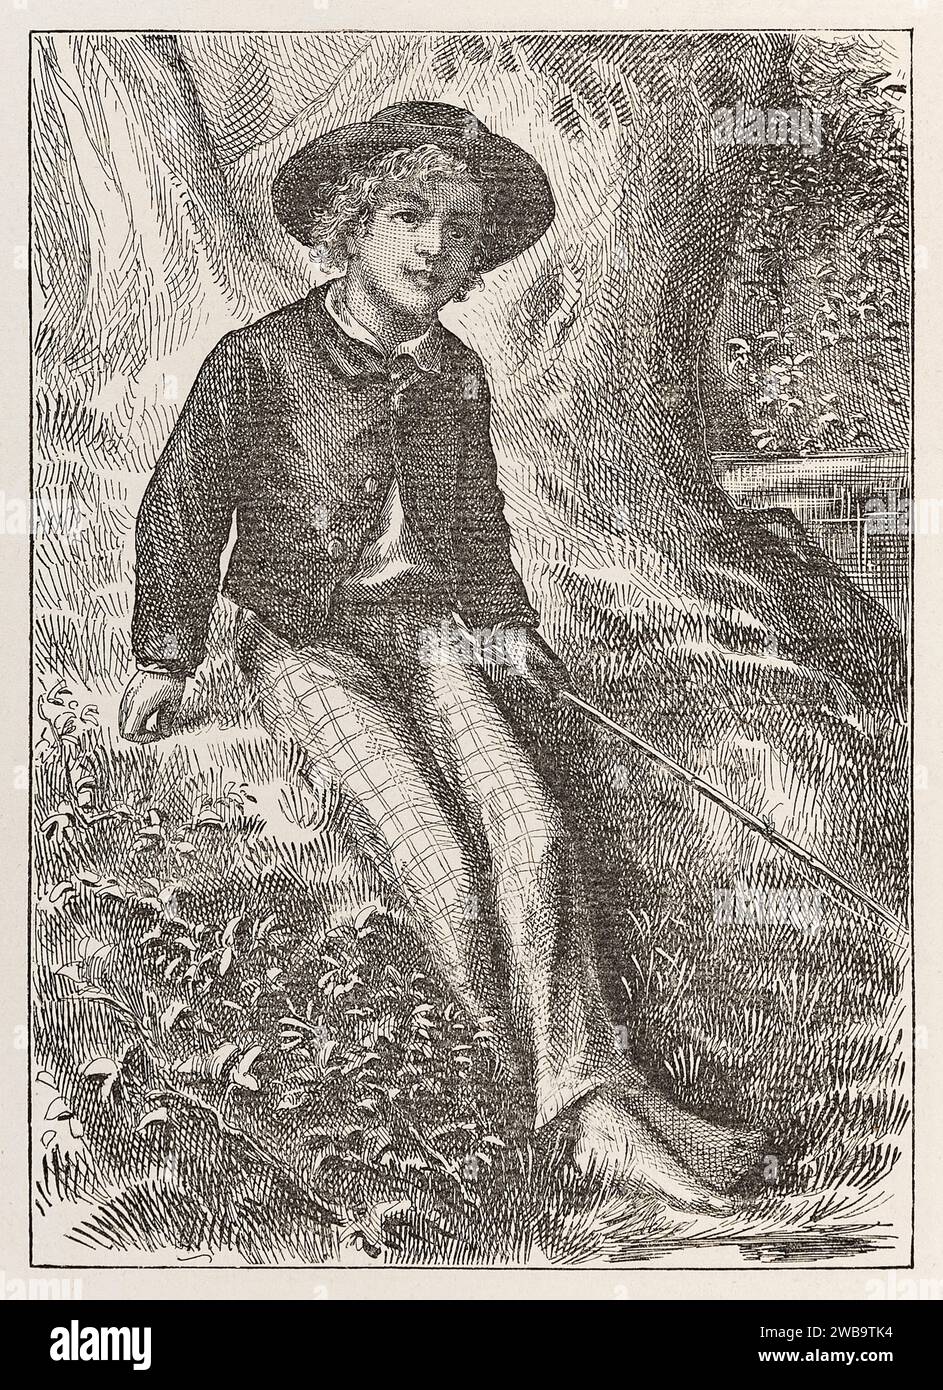 Illustrazione frontespizio «Tom Sawyer» da «The Adventures of Tom Sawyer» di Mark Twain (1835-1910), illustrazione di True Williams (1839-1897). Fotografia di una prima edizione del 1876. Credito: Collezione privata / AF fotografie Foto Stock